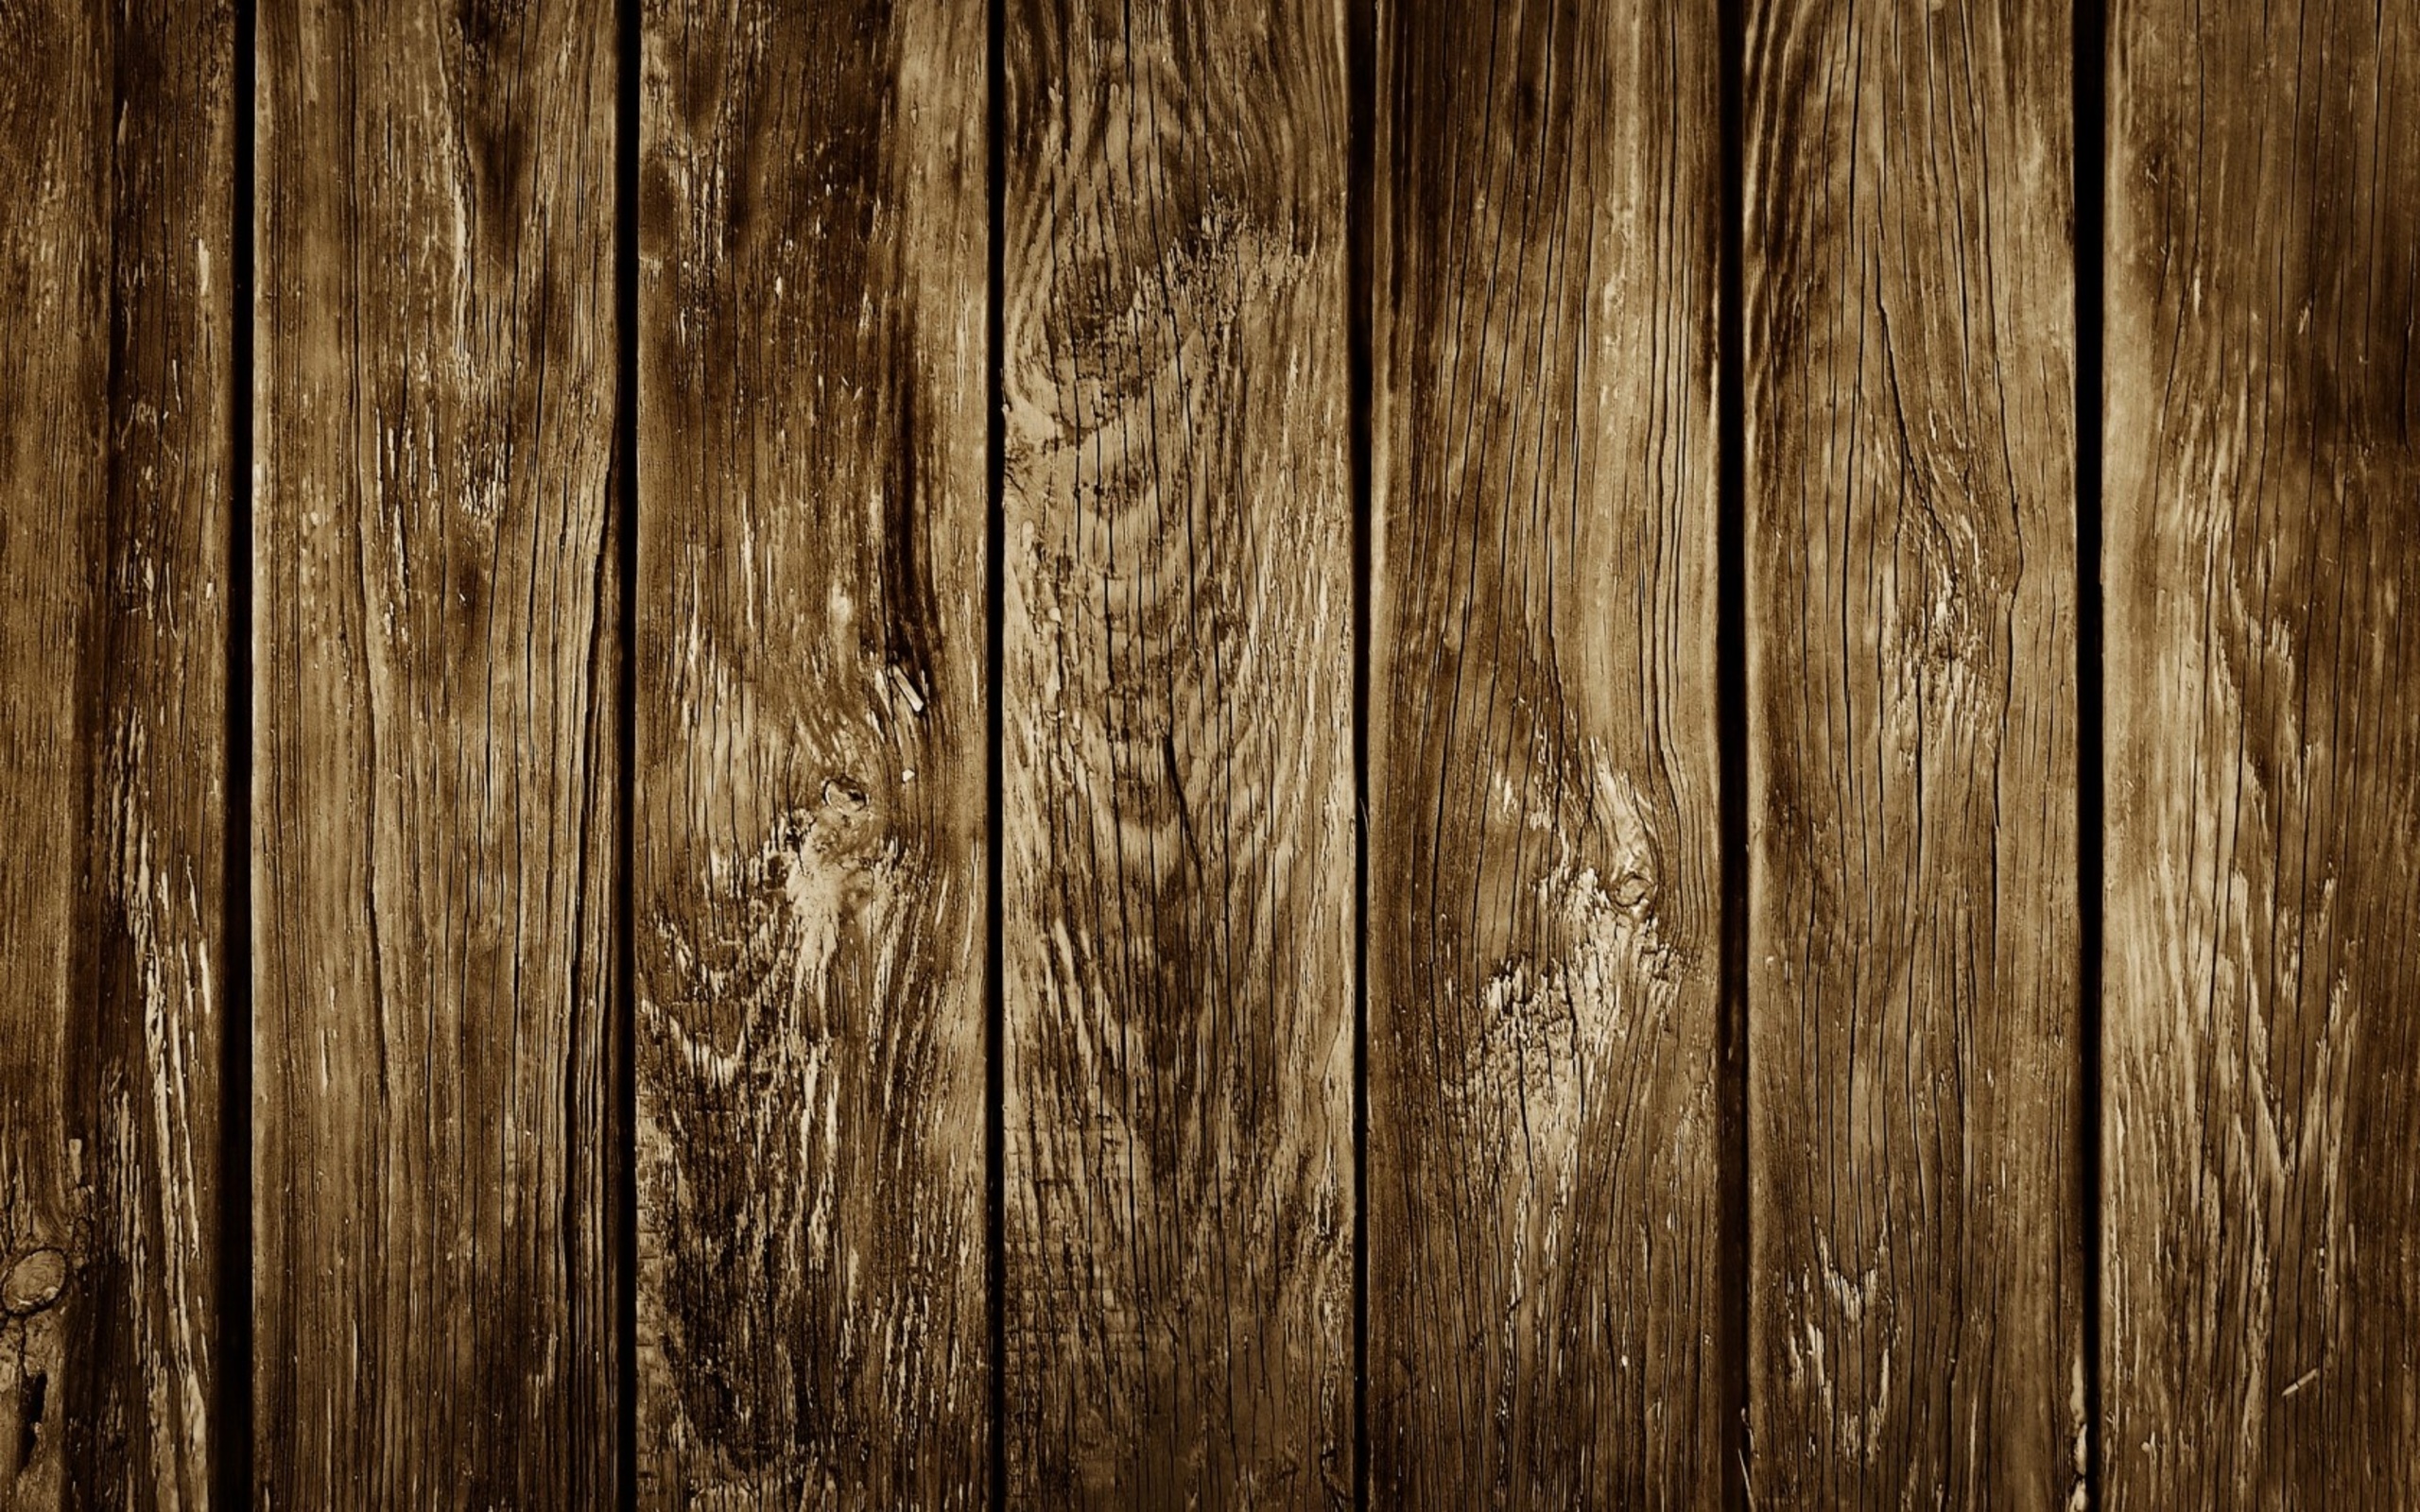 Woodworking Desktop Wallpaper - WallpaperSafari